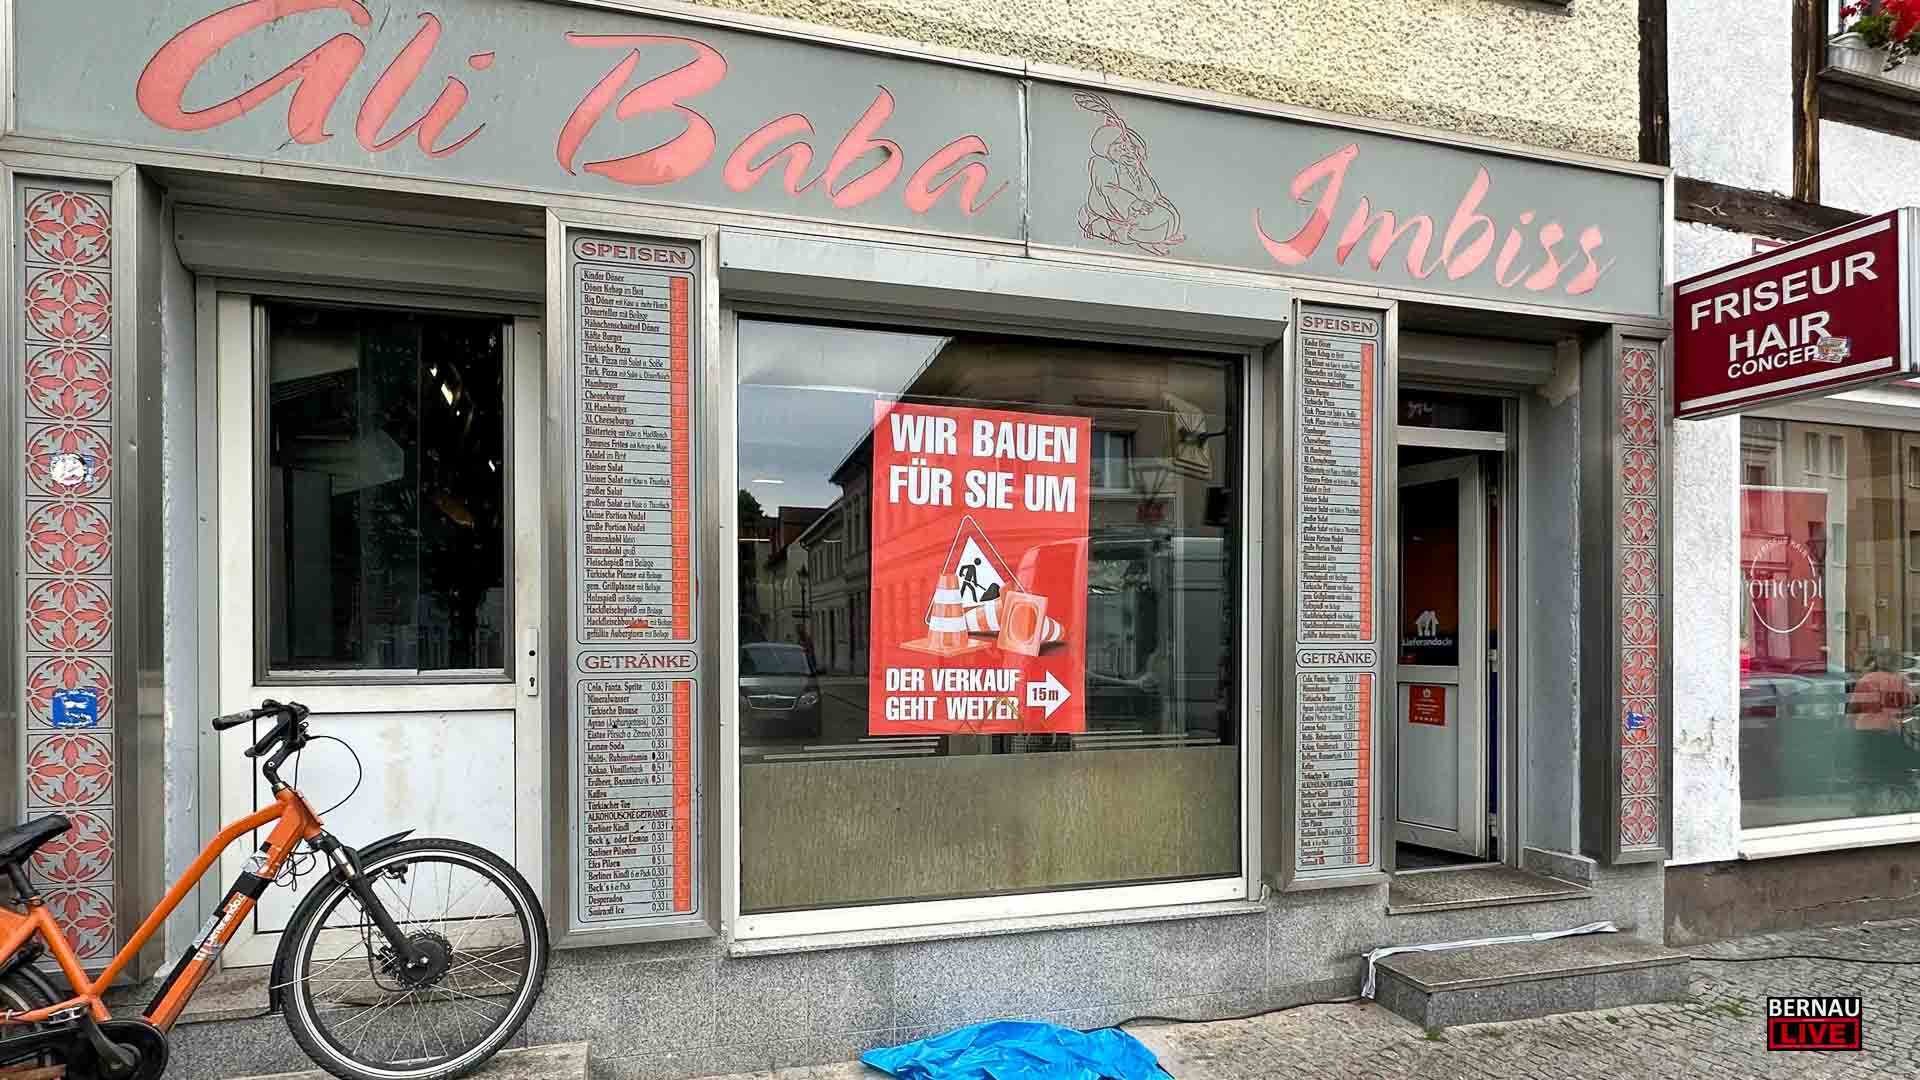 "Ali Baba" Imbiss Bernau schließt vorübergehend - Verkauf gleich nebenan